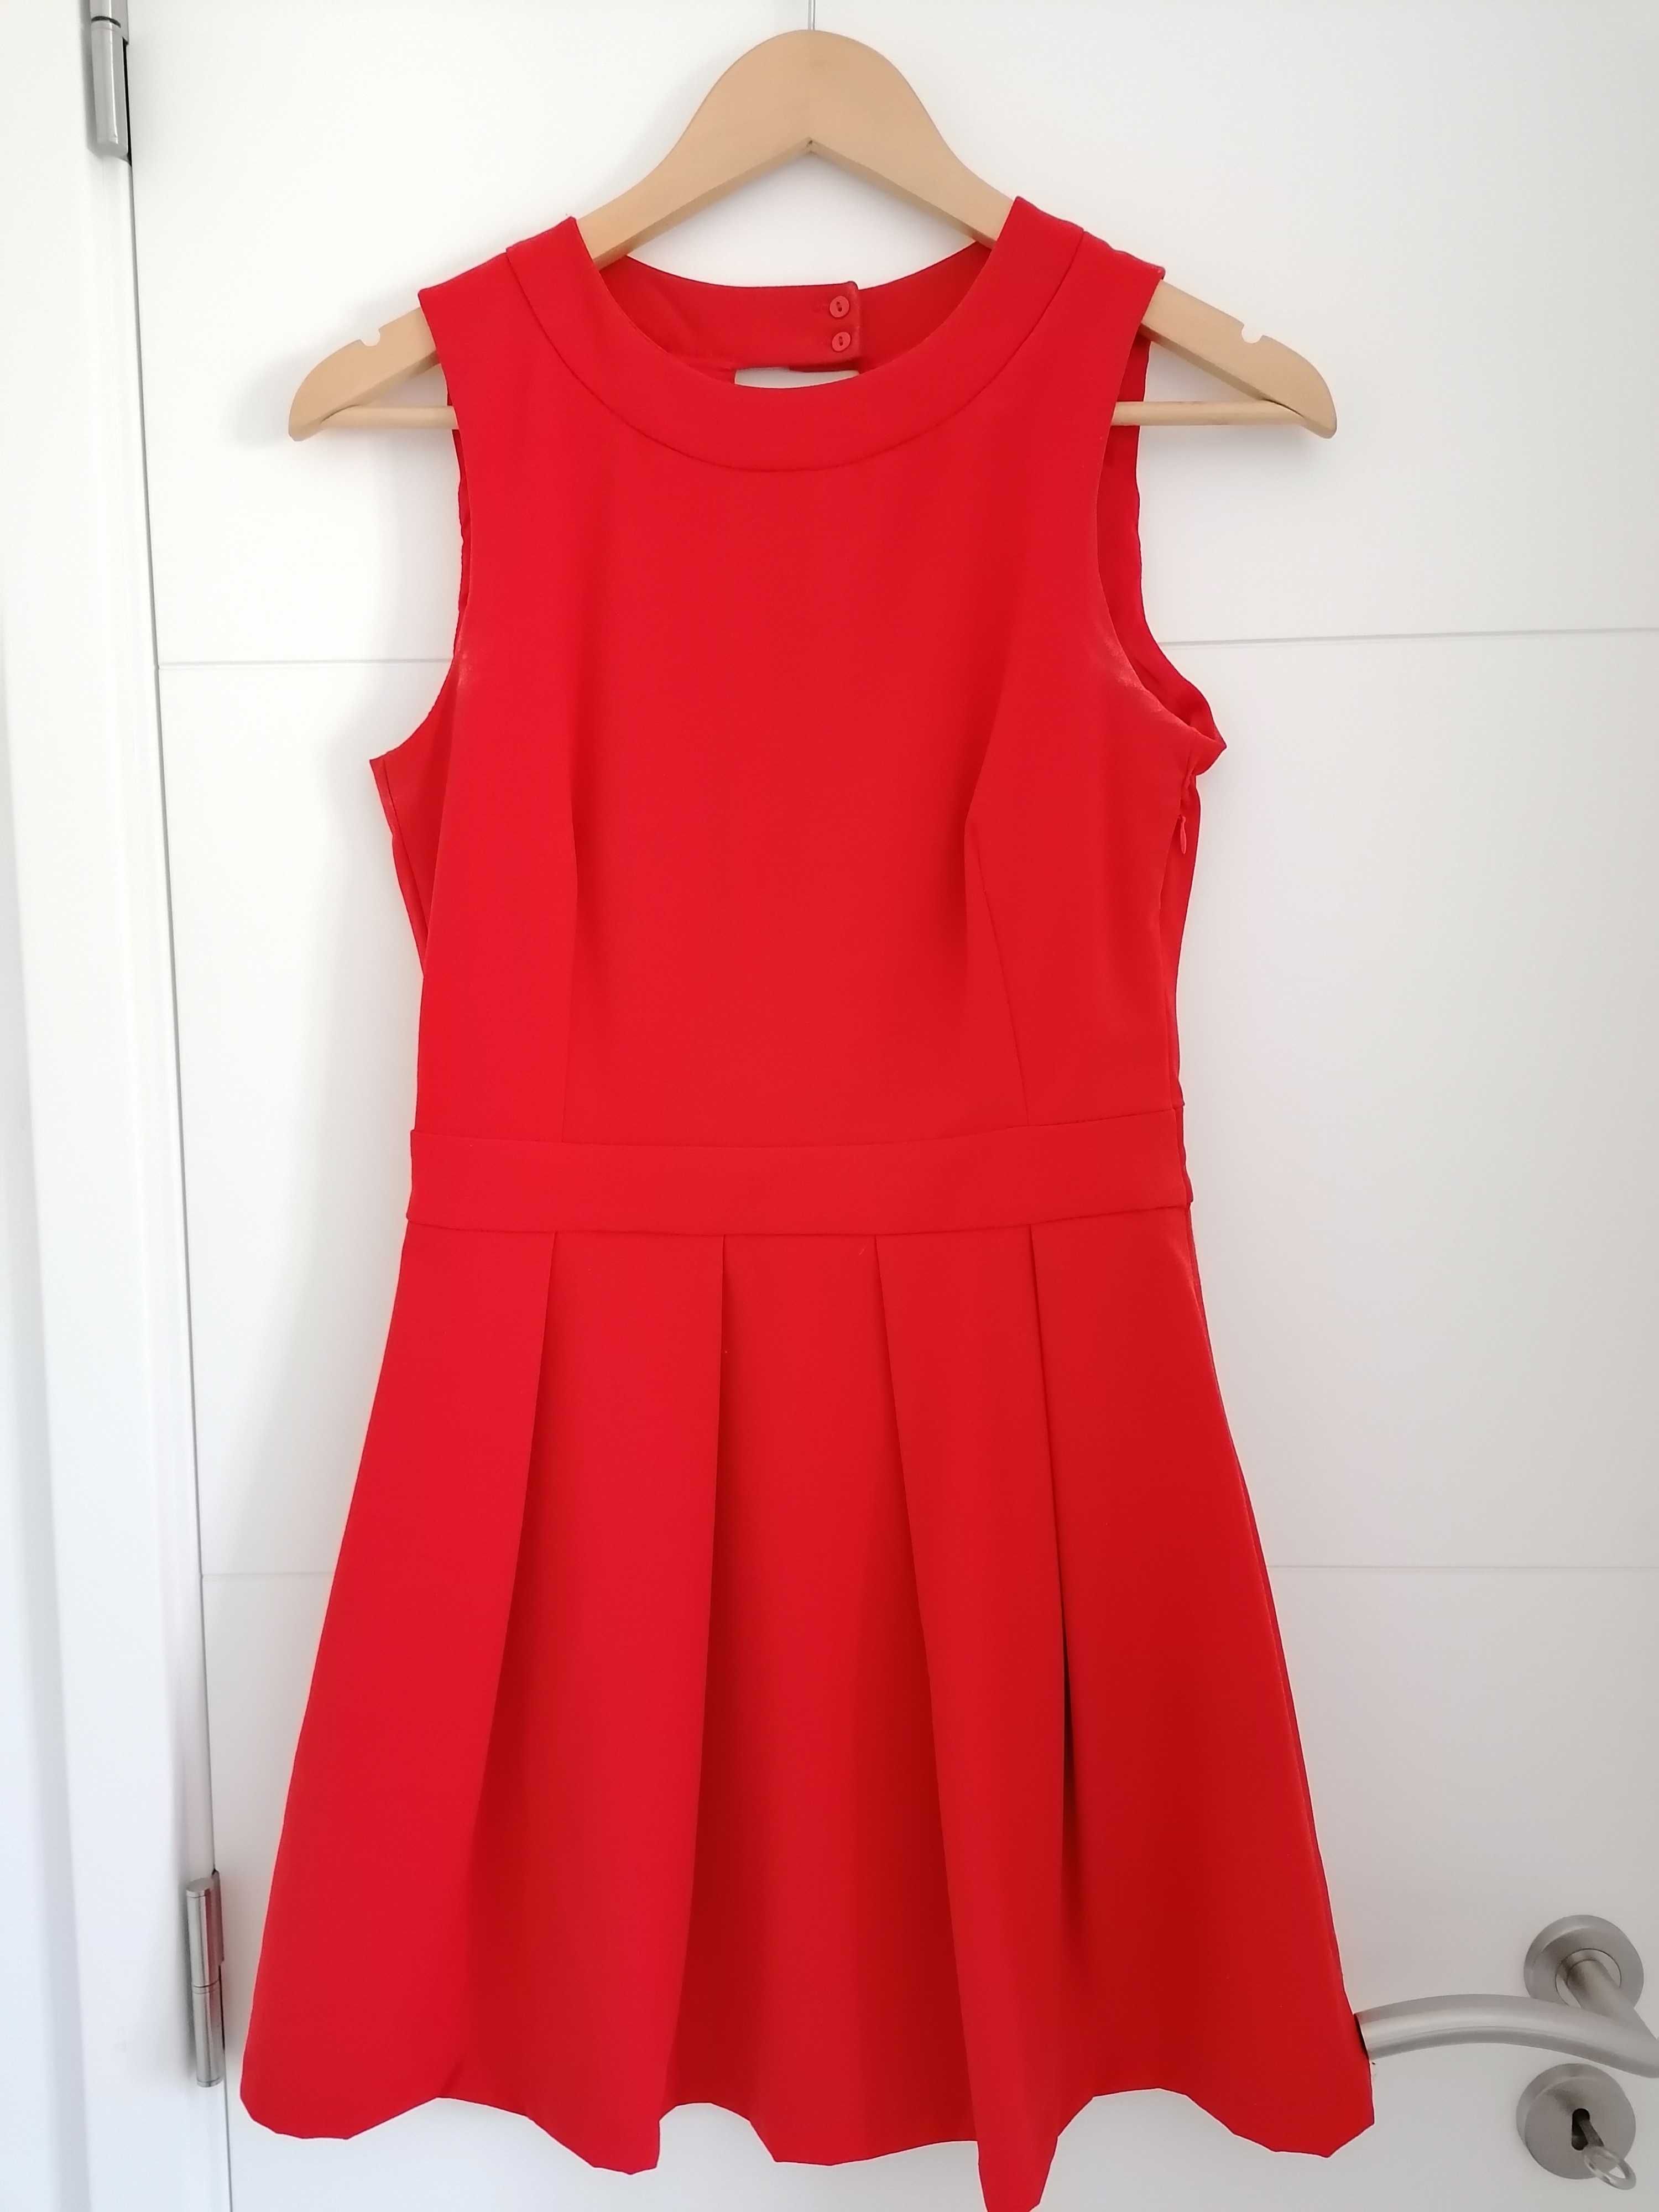 Vestido vermelho curto com aberturas nas costas